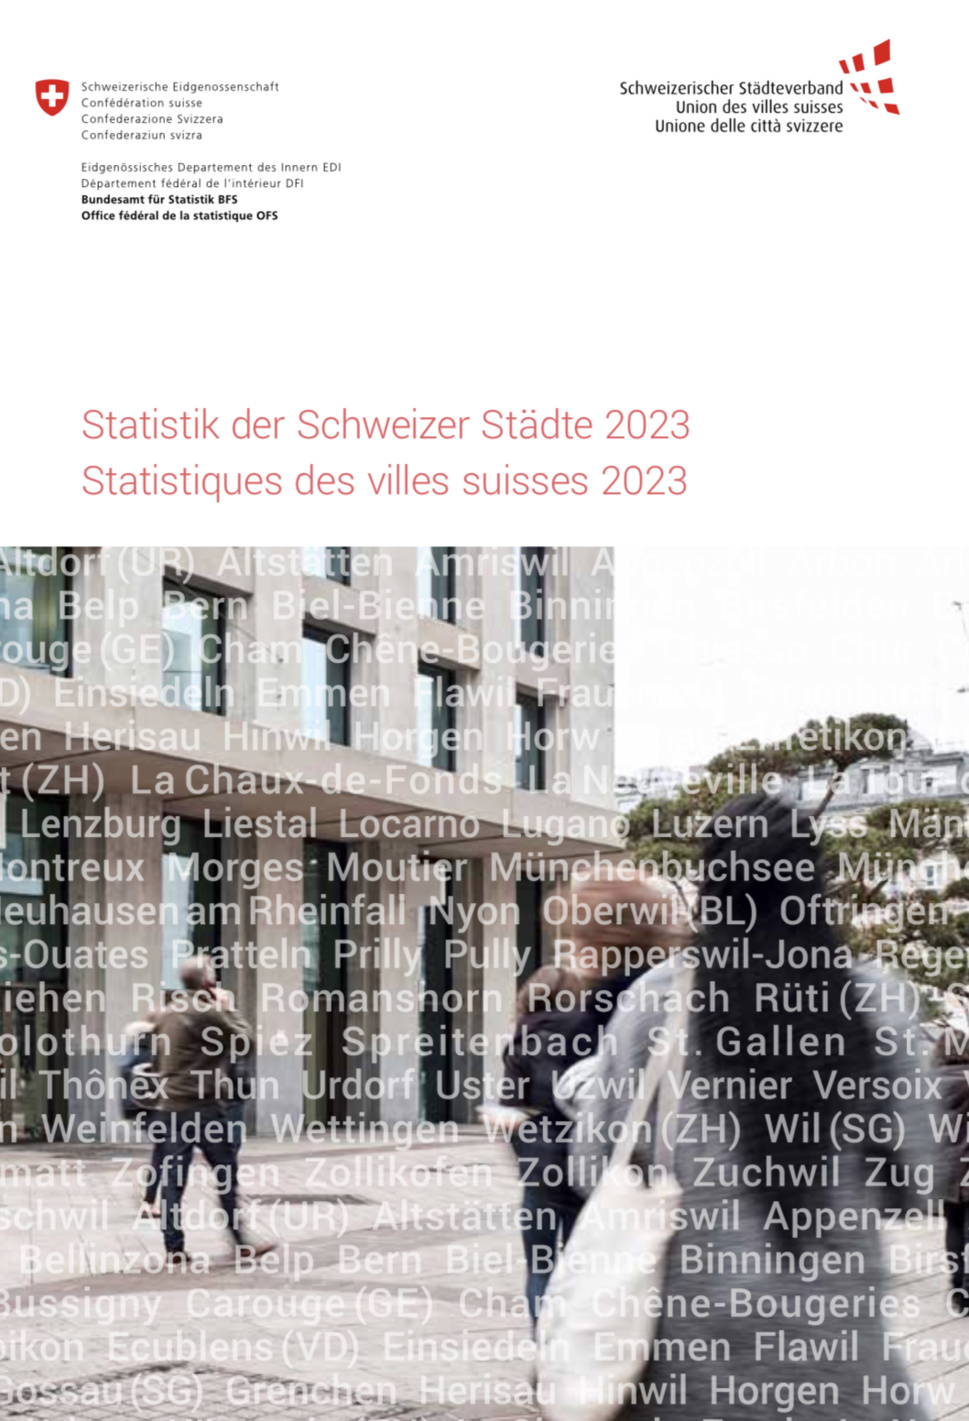 Statistiques des villes suisses 2023